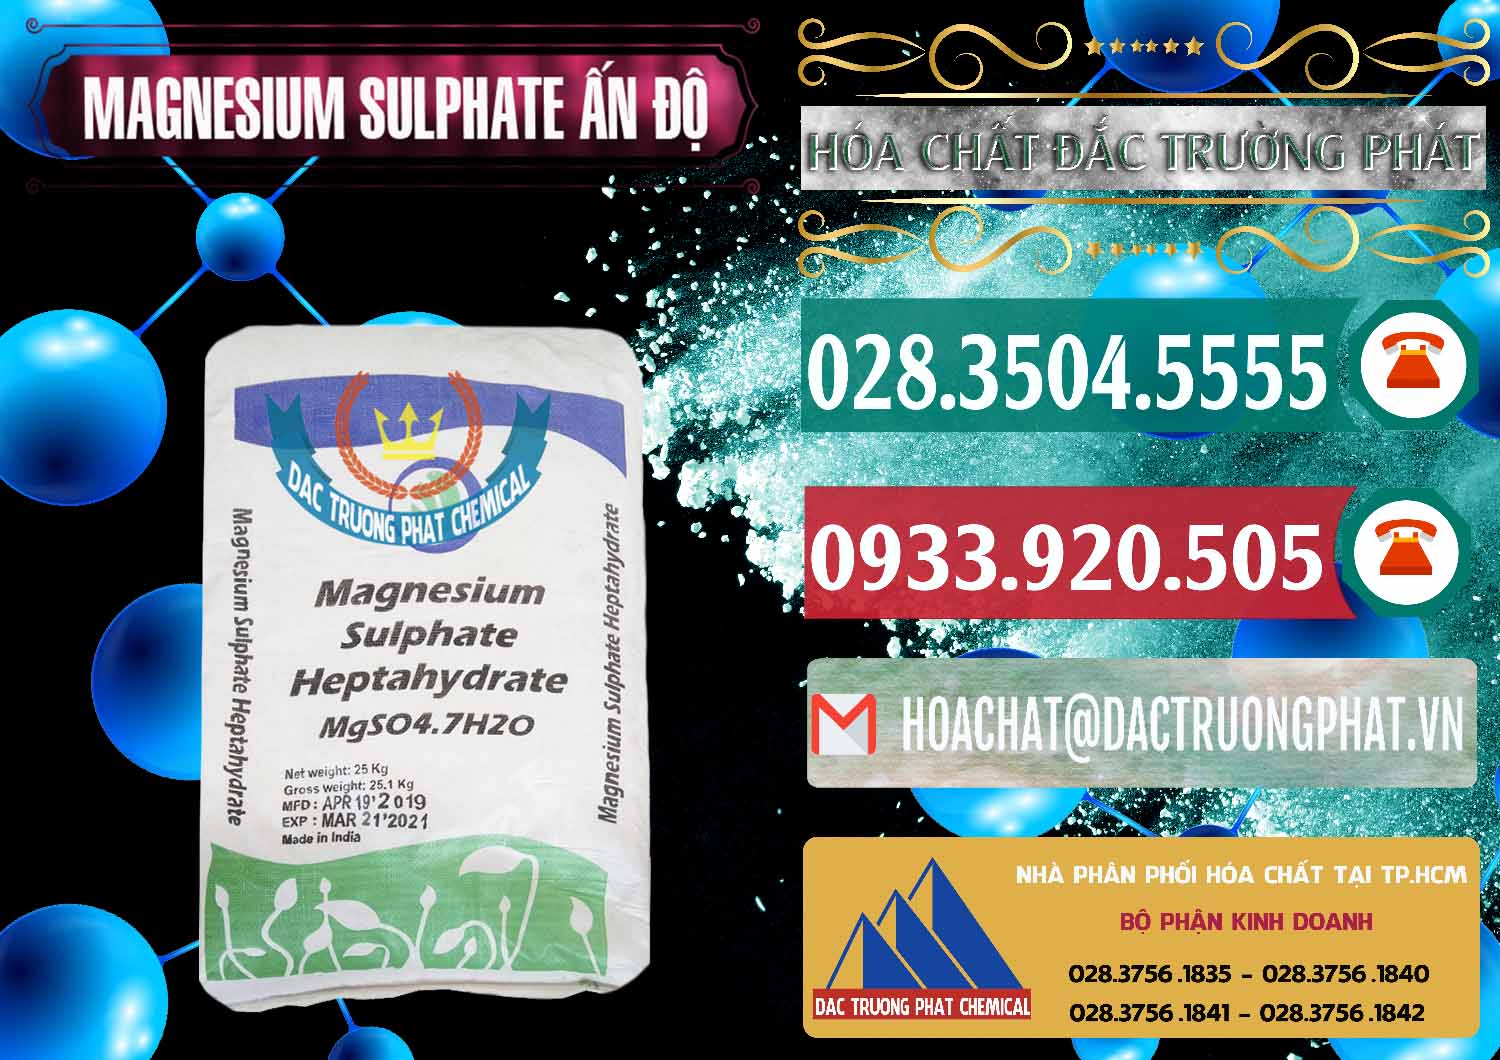 Cty chuyên nhập khẩu và bán MGSO4.7H2O – Magnesium Sulphate Heptahydrate Ấn Độ India - 0362 - Đơn vị chuyên cung cấp - kinh doanh hóa chất tại TP.HCM - muabanhoachat.vn